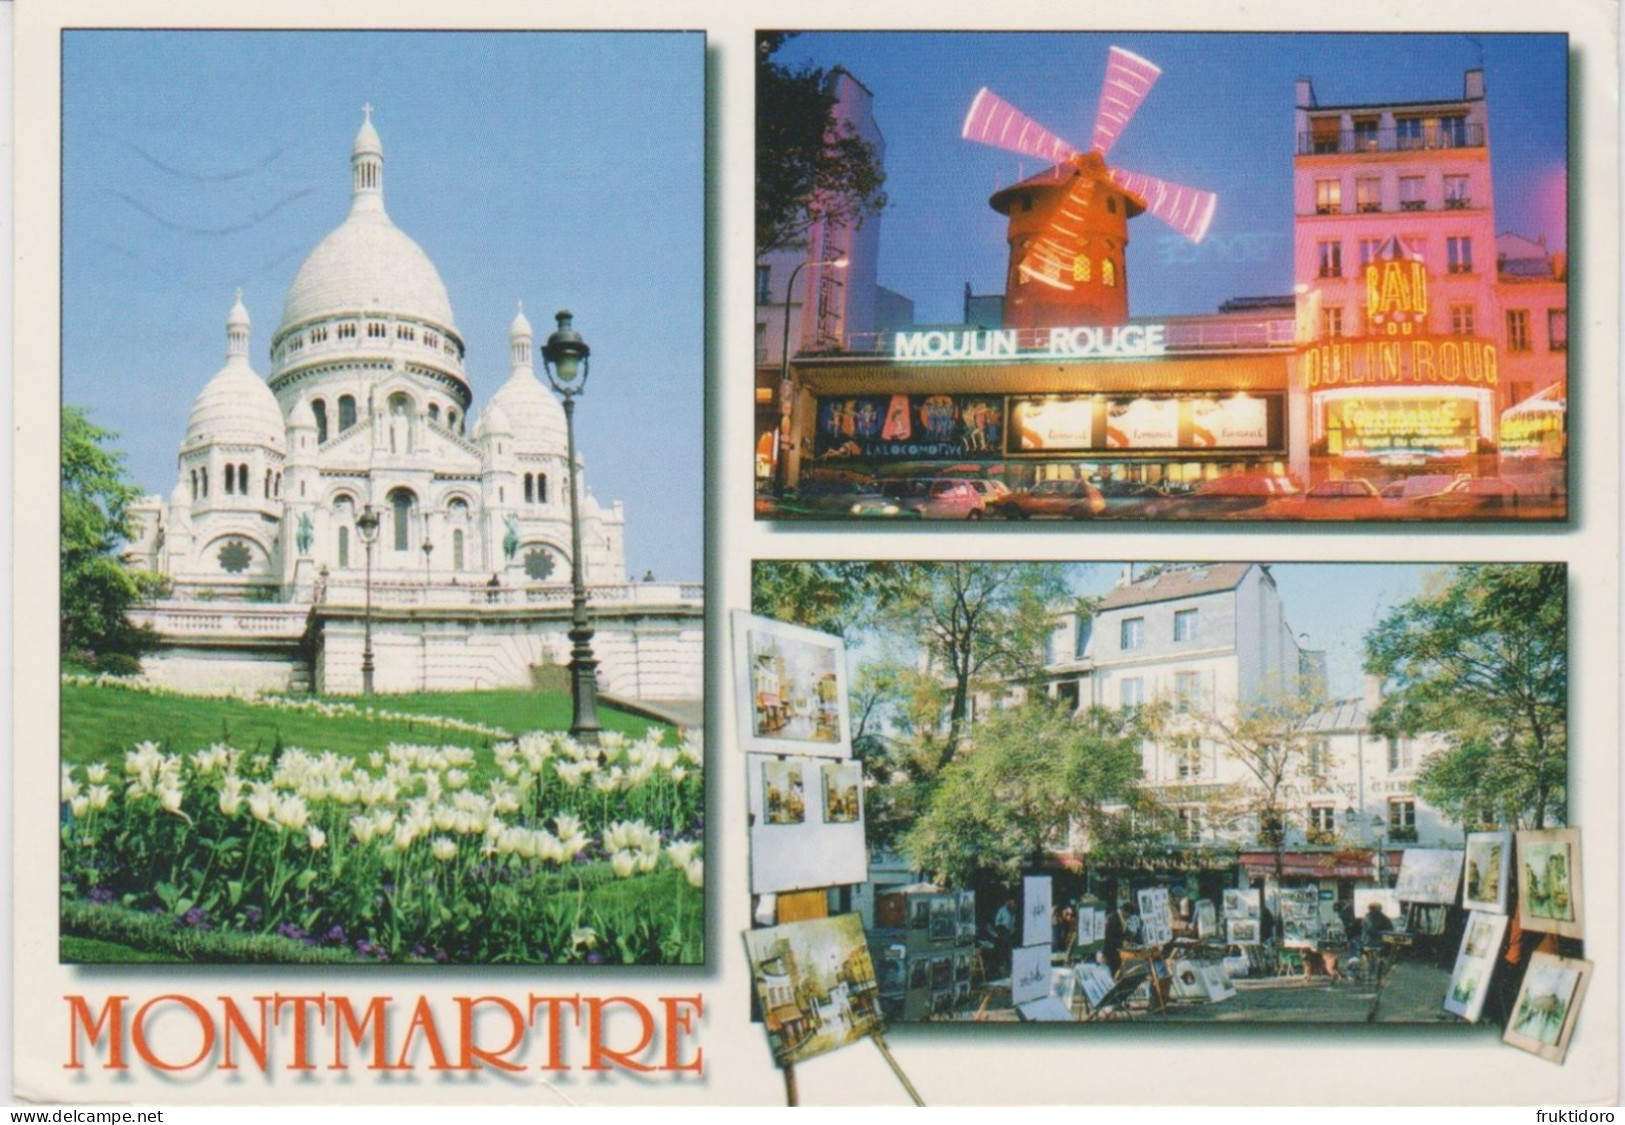 AKFR France Postcards Paris - Arc de Triomphe - Bridge Alexandre III - Louvre Museum